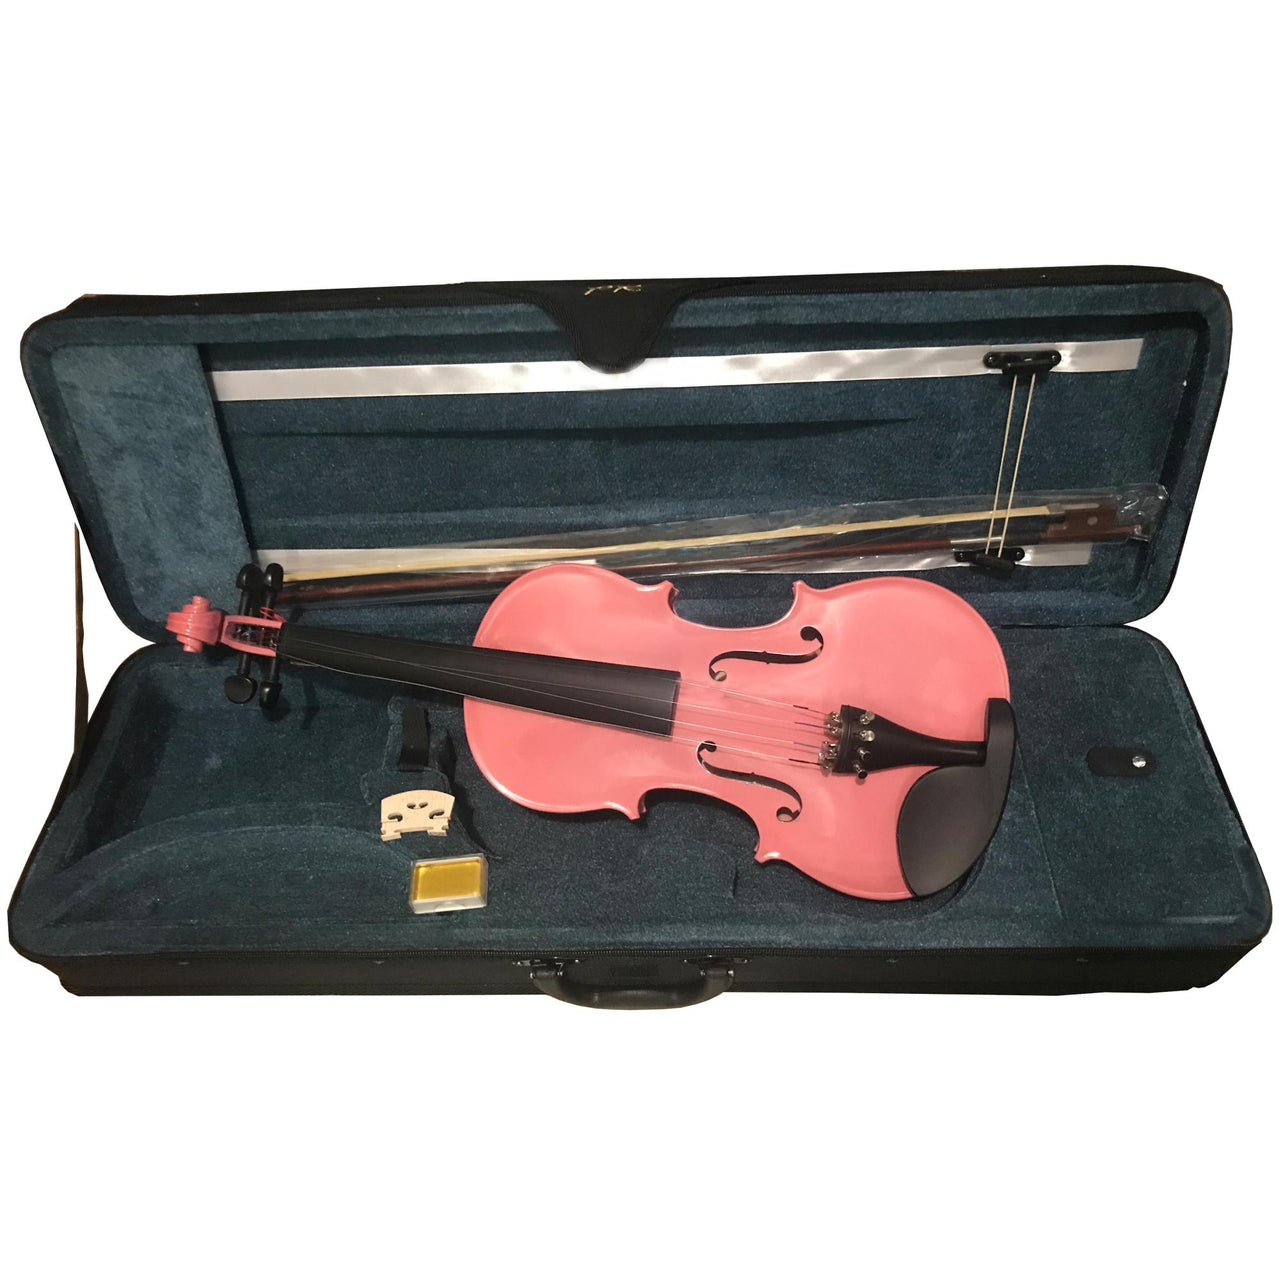 Violin Estudiante Pearl River C/arco Y Estuche 4/4 Rosa, Mv005pk